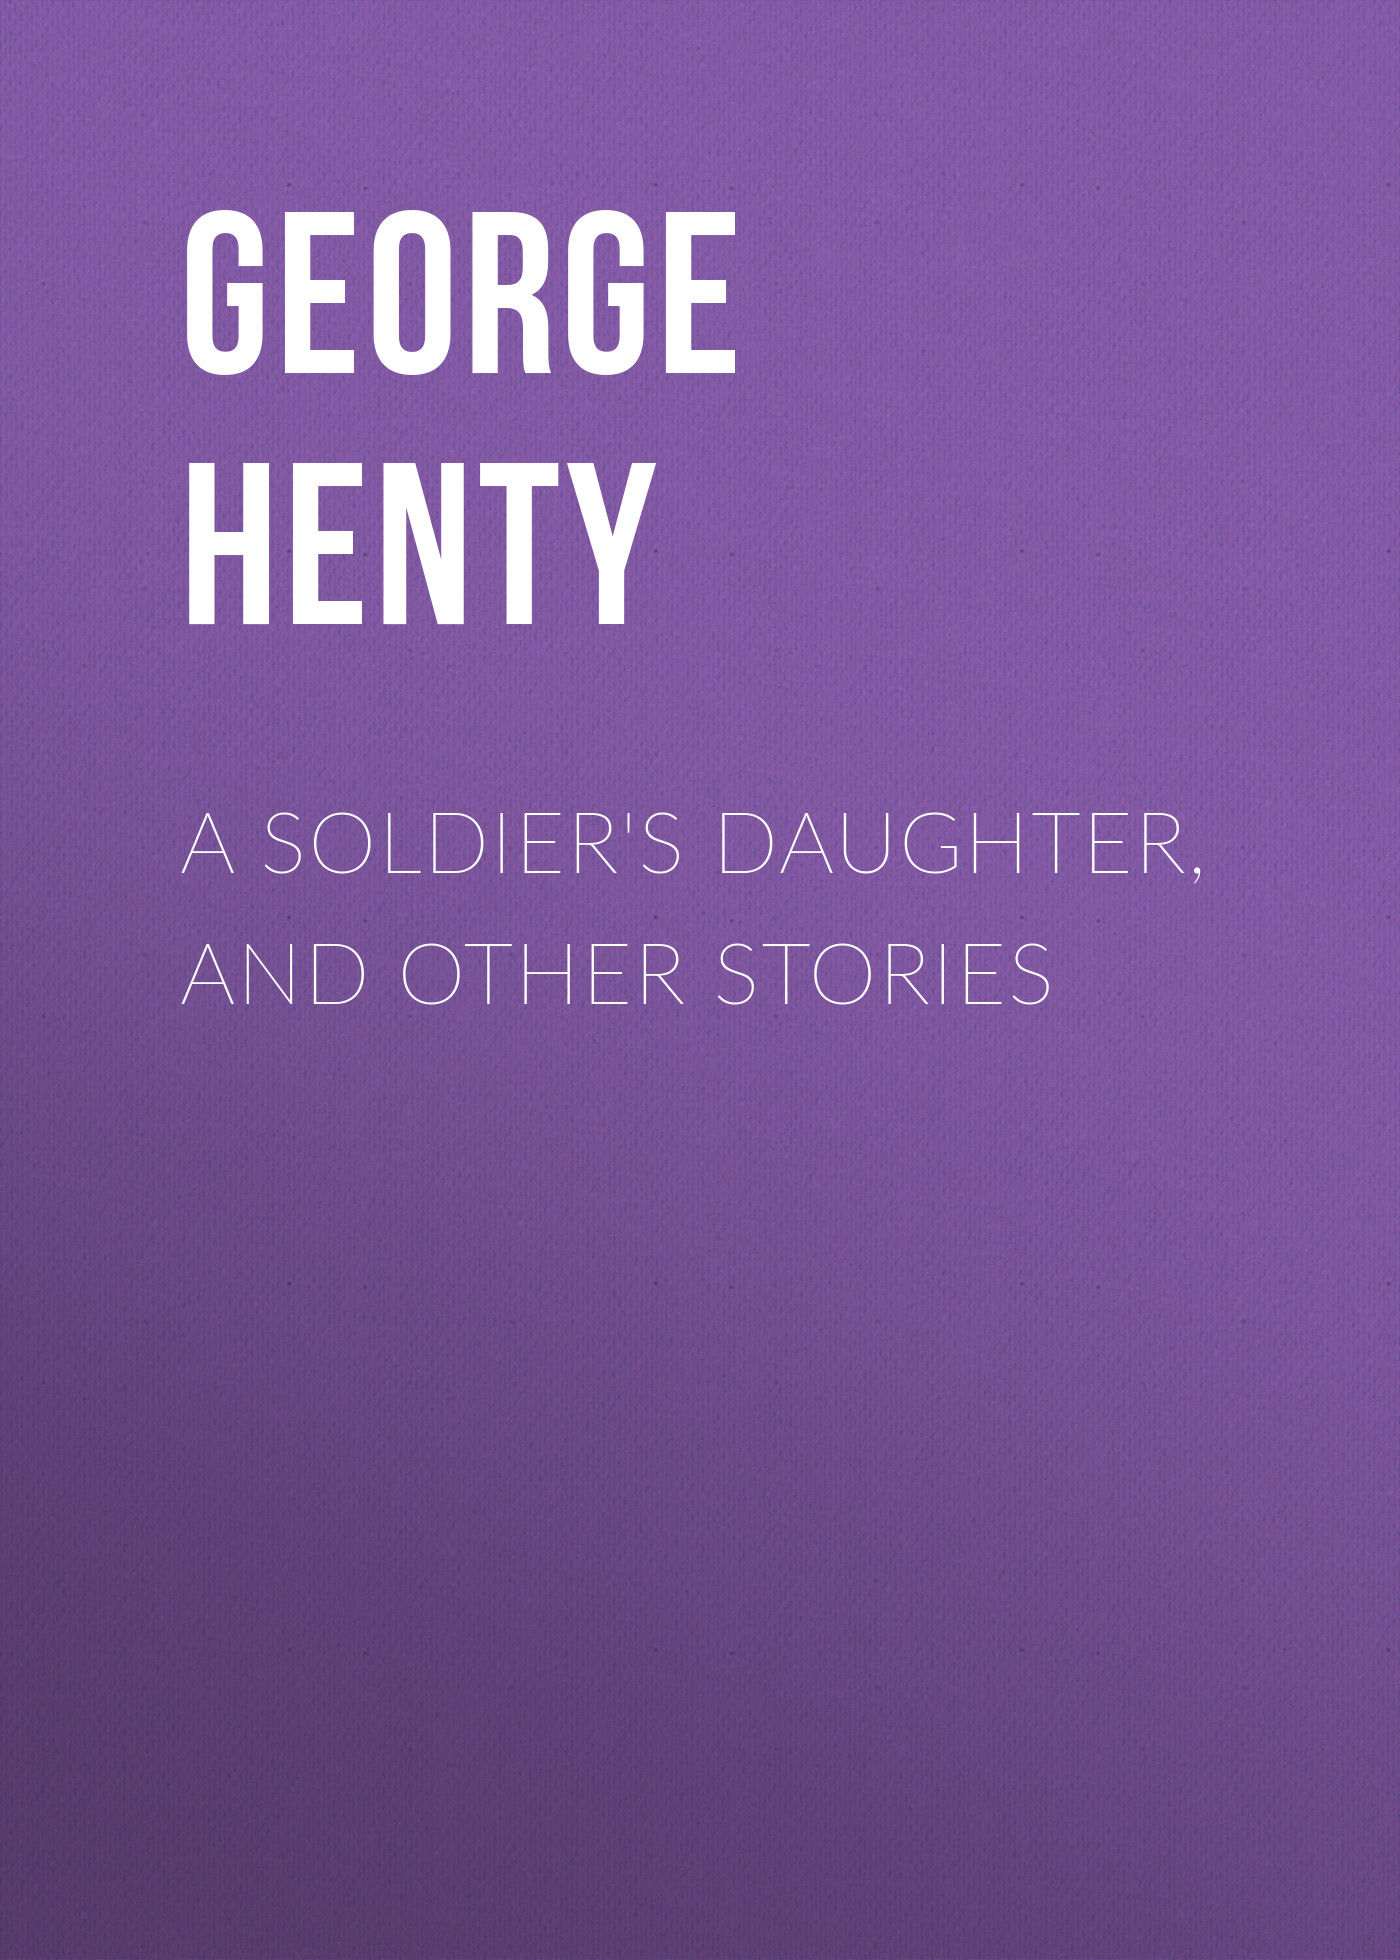 Книга A Soldier's Daughter, and Other Stories из серии , созданная George Henty, может относится к жанру Зарубежная классика. Стоимость электронной книги A Soldier's Daughter, and Other Stories с идентификатором 23147547 составляет 5.99 руб.